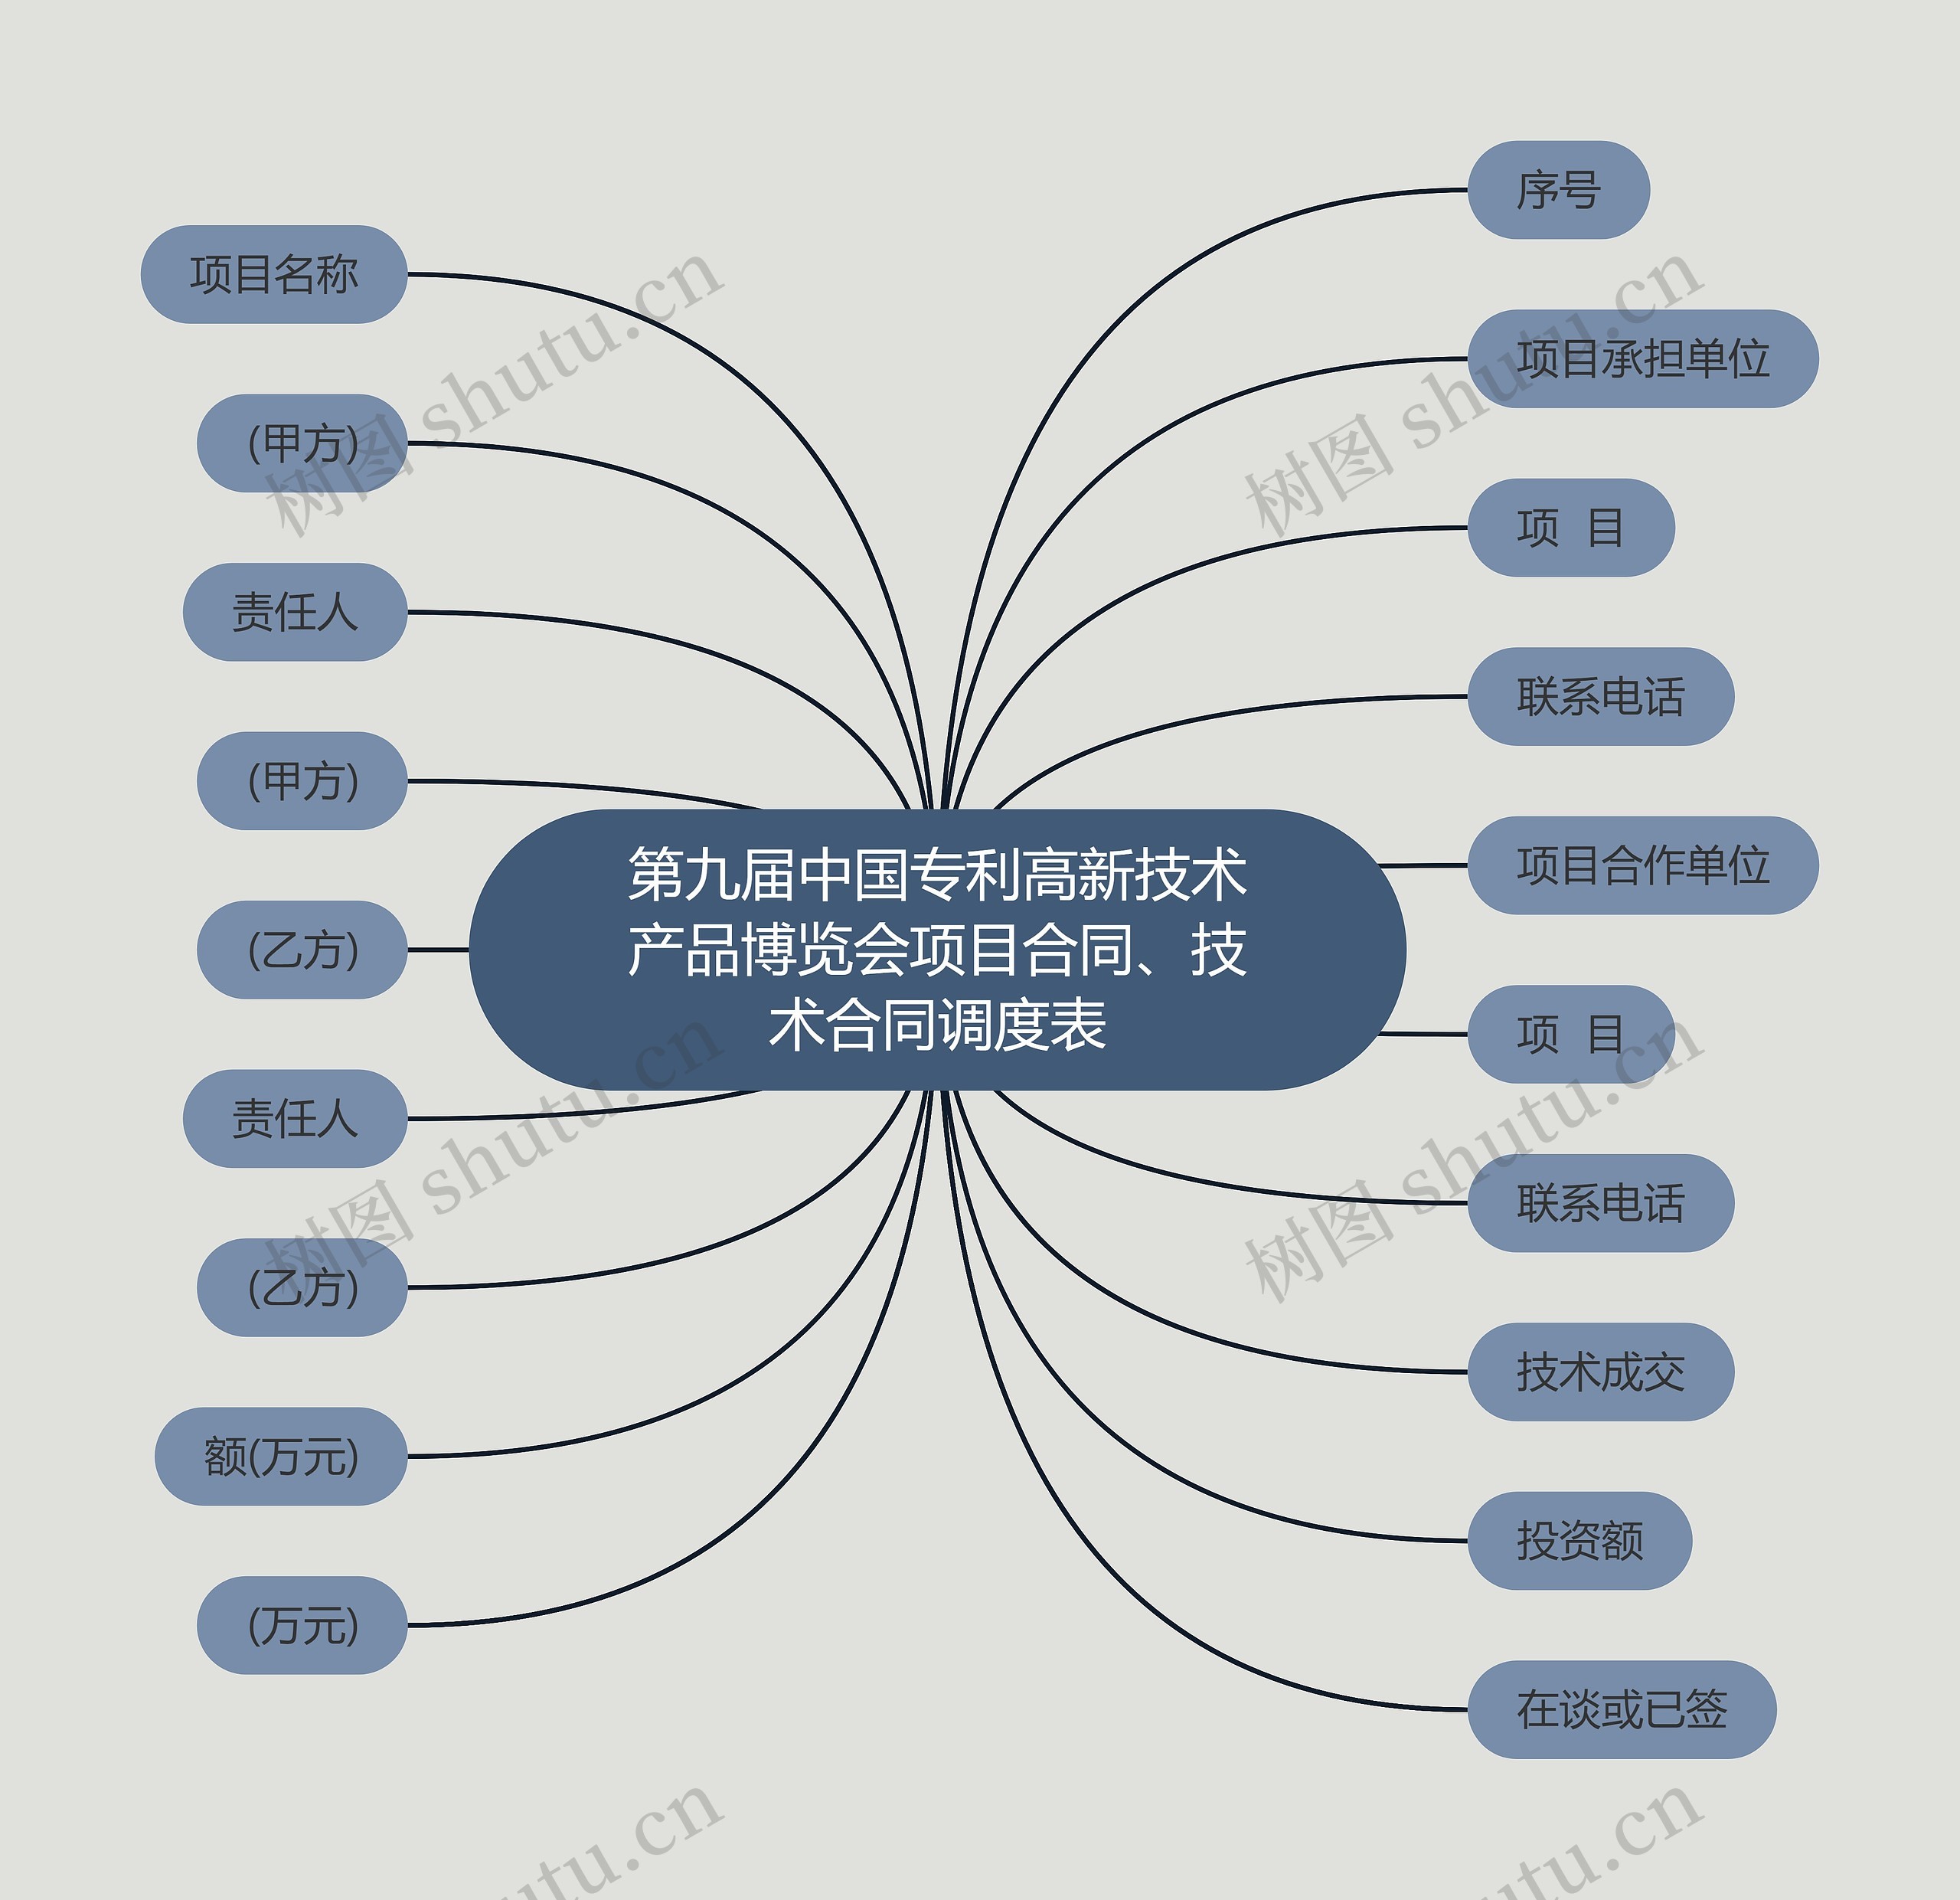 第九届中国专利高新技术产品博览会项目合同、技术合同调度表